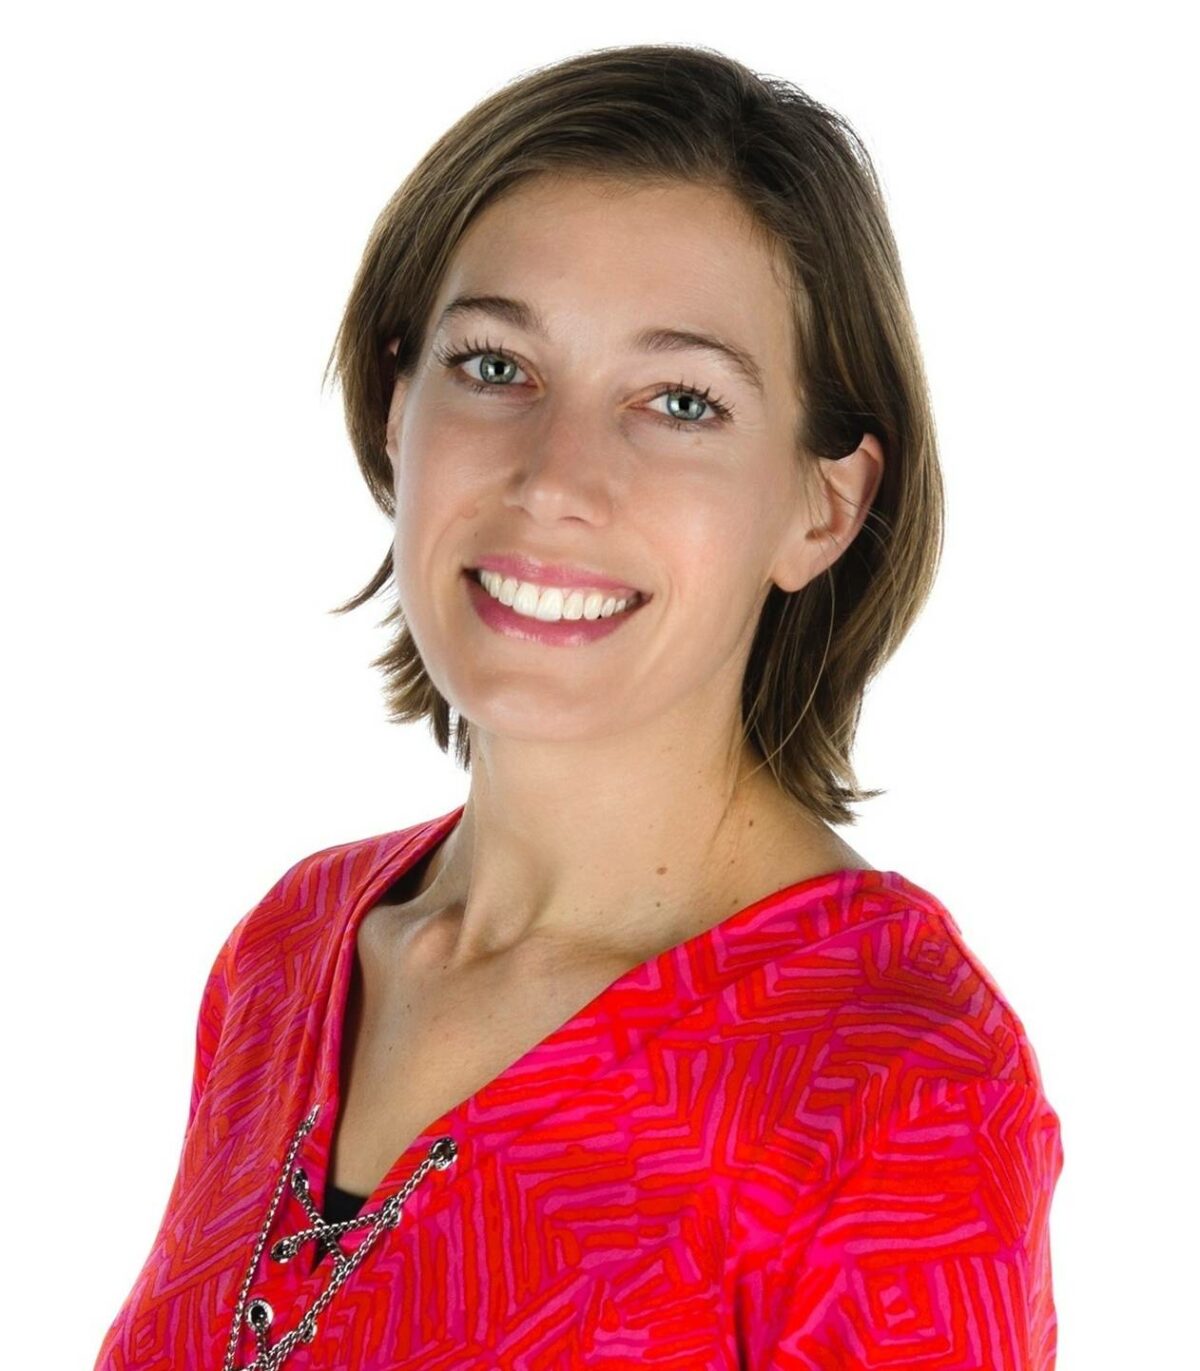 Even voorstellen: onze nieuwe netwerkdirecteur Corinne de Jonge van Ellemeet